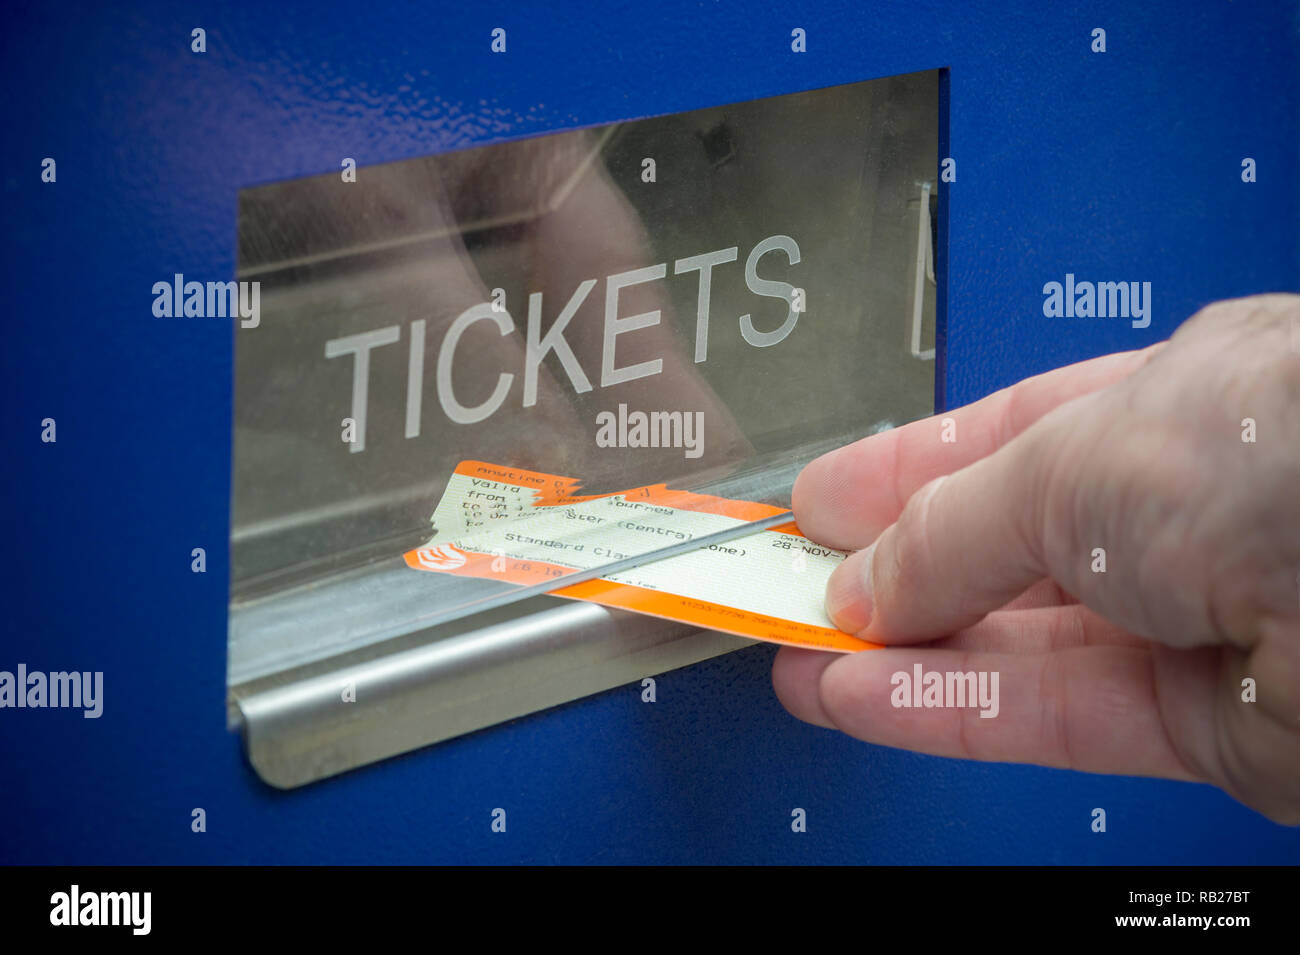 Un uomo raccoglie un biglietto del treno da un biglietto distributori automatici situati in un Regno Unito stazione ferroviaria. Foto Stock